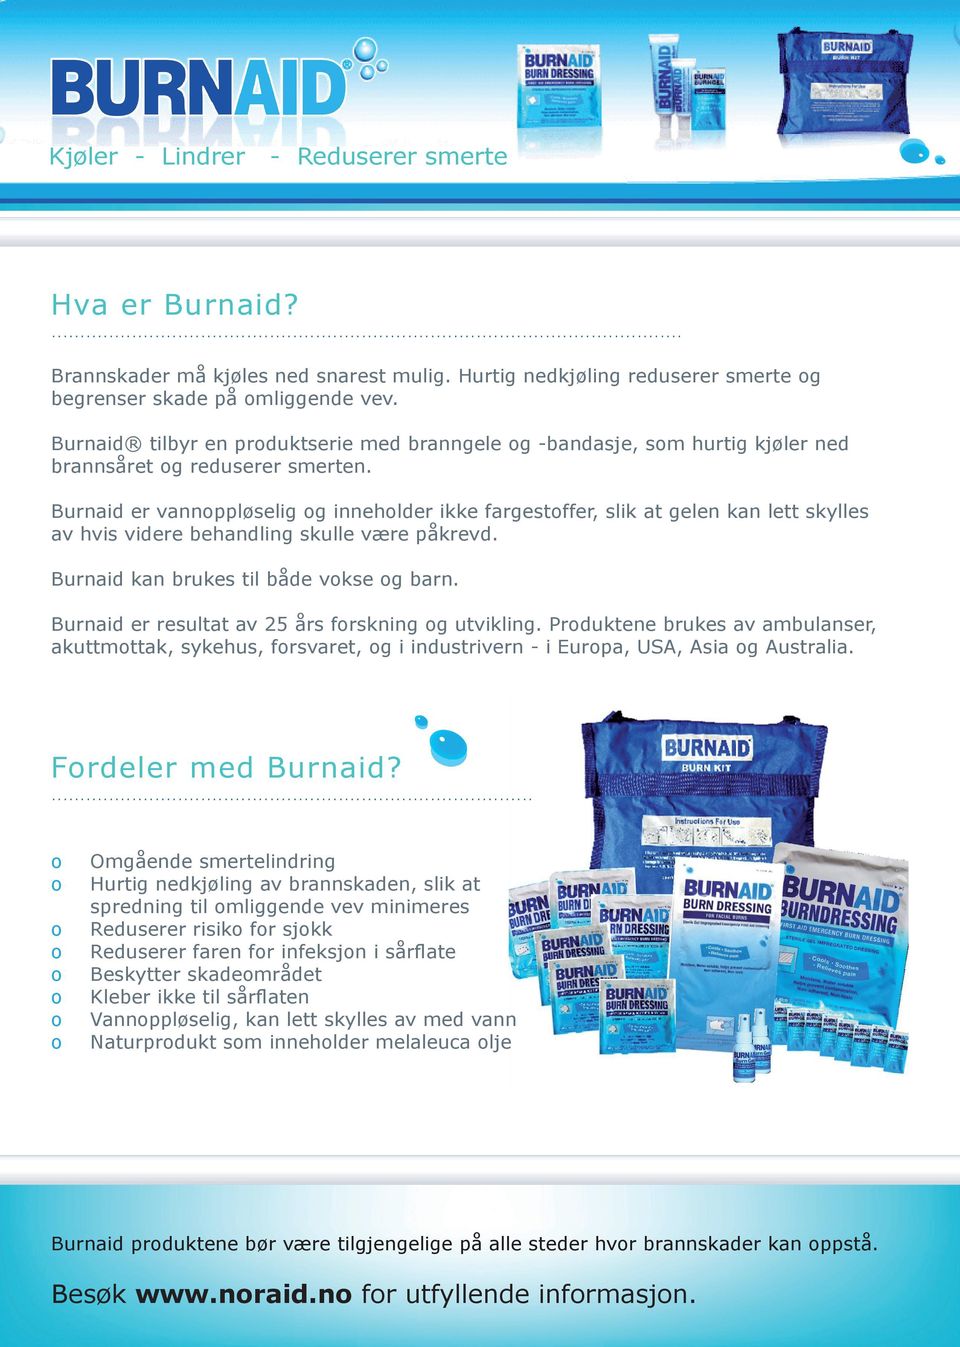 Burnaid er vannoppløselig og inneholder ikke fargestoffer, slik at gelen kan lett skylles av hvis videre behandling skulle være påkrevd. Burnaid kan brukes til både vokse og barn.